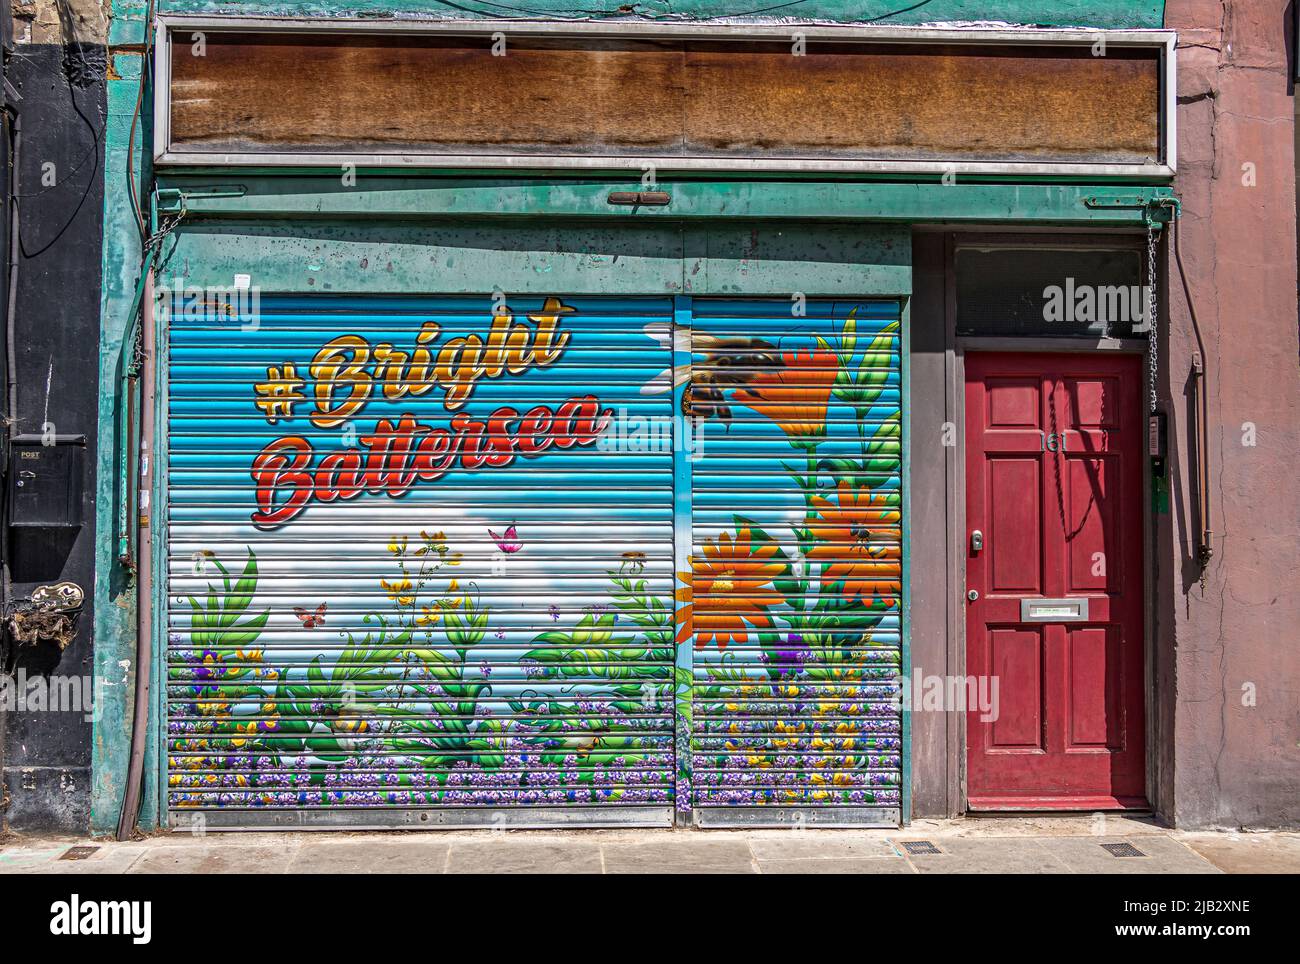 Un colorido obturador de metal pintado en una tienda en desuso, pintado con la etiqueta de hash Bright Battersea en Battersea High Street , Londres, SW11 Foto de stock